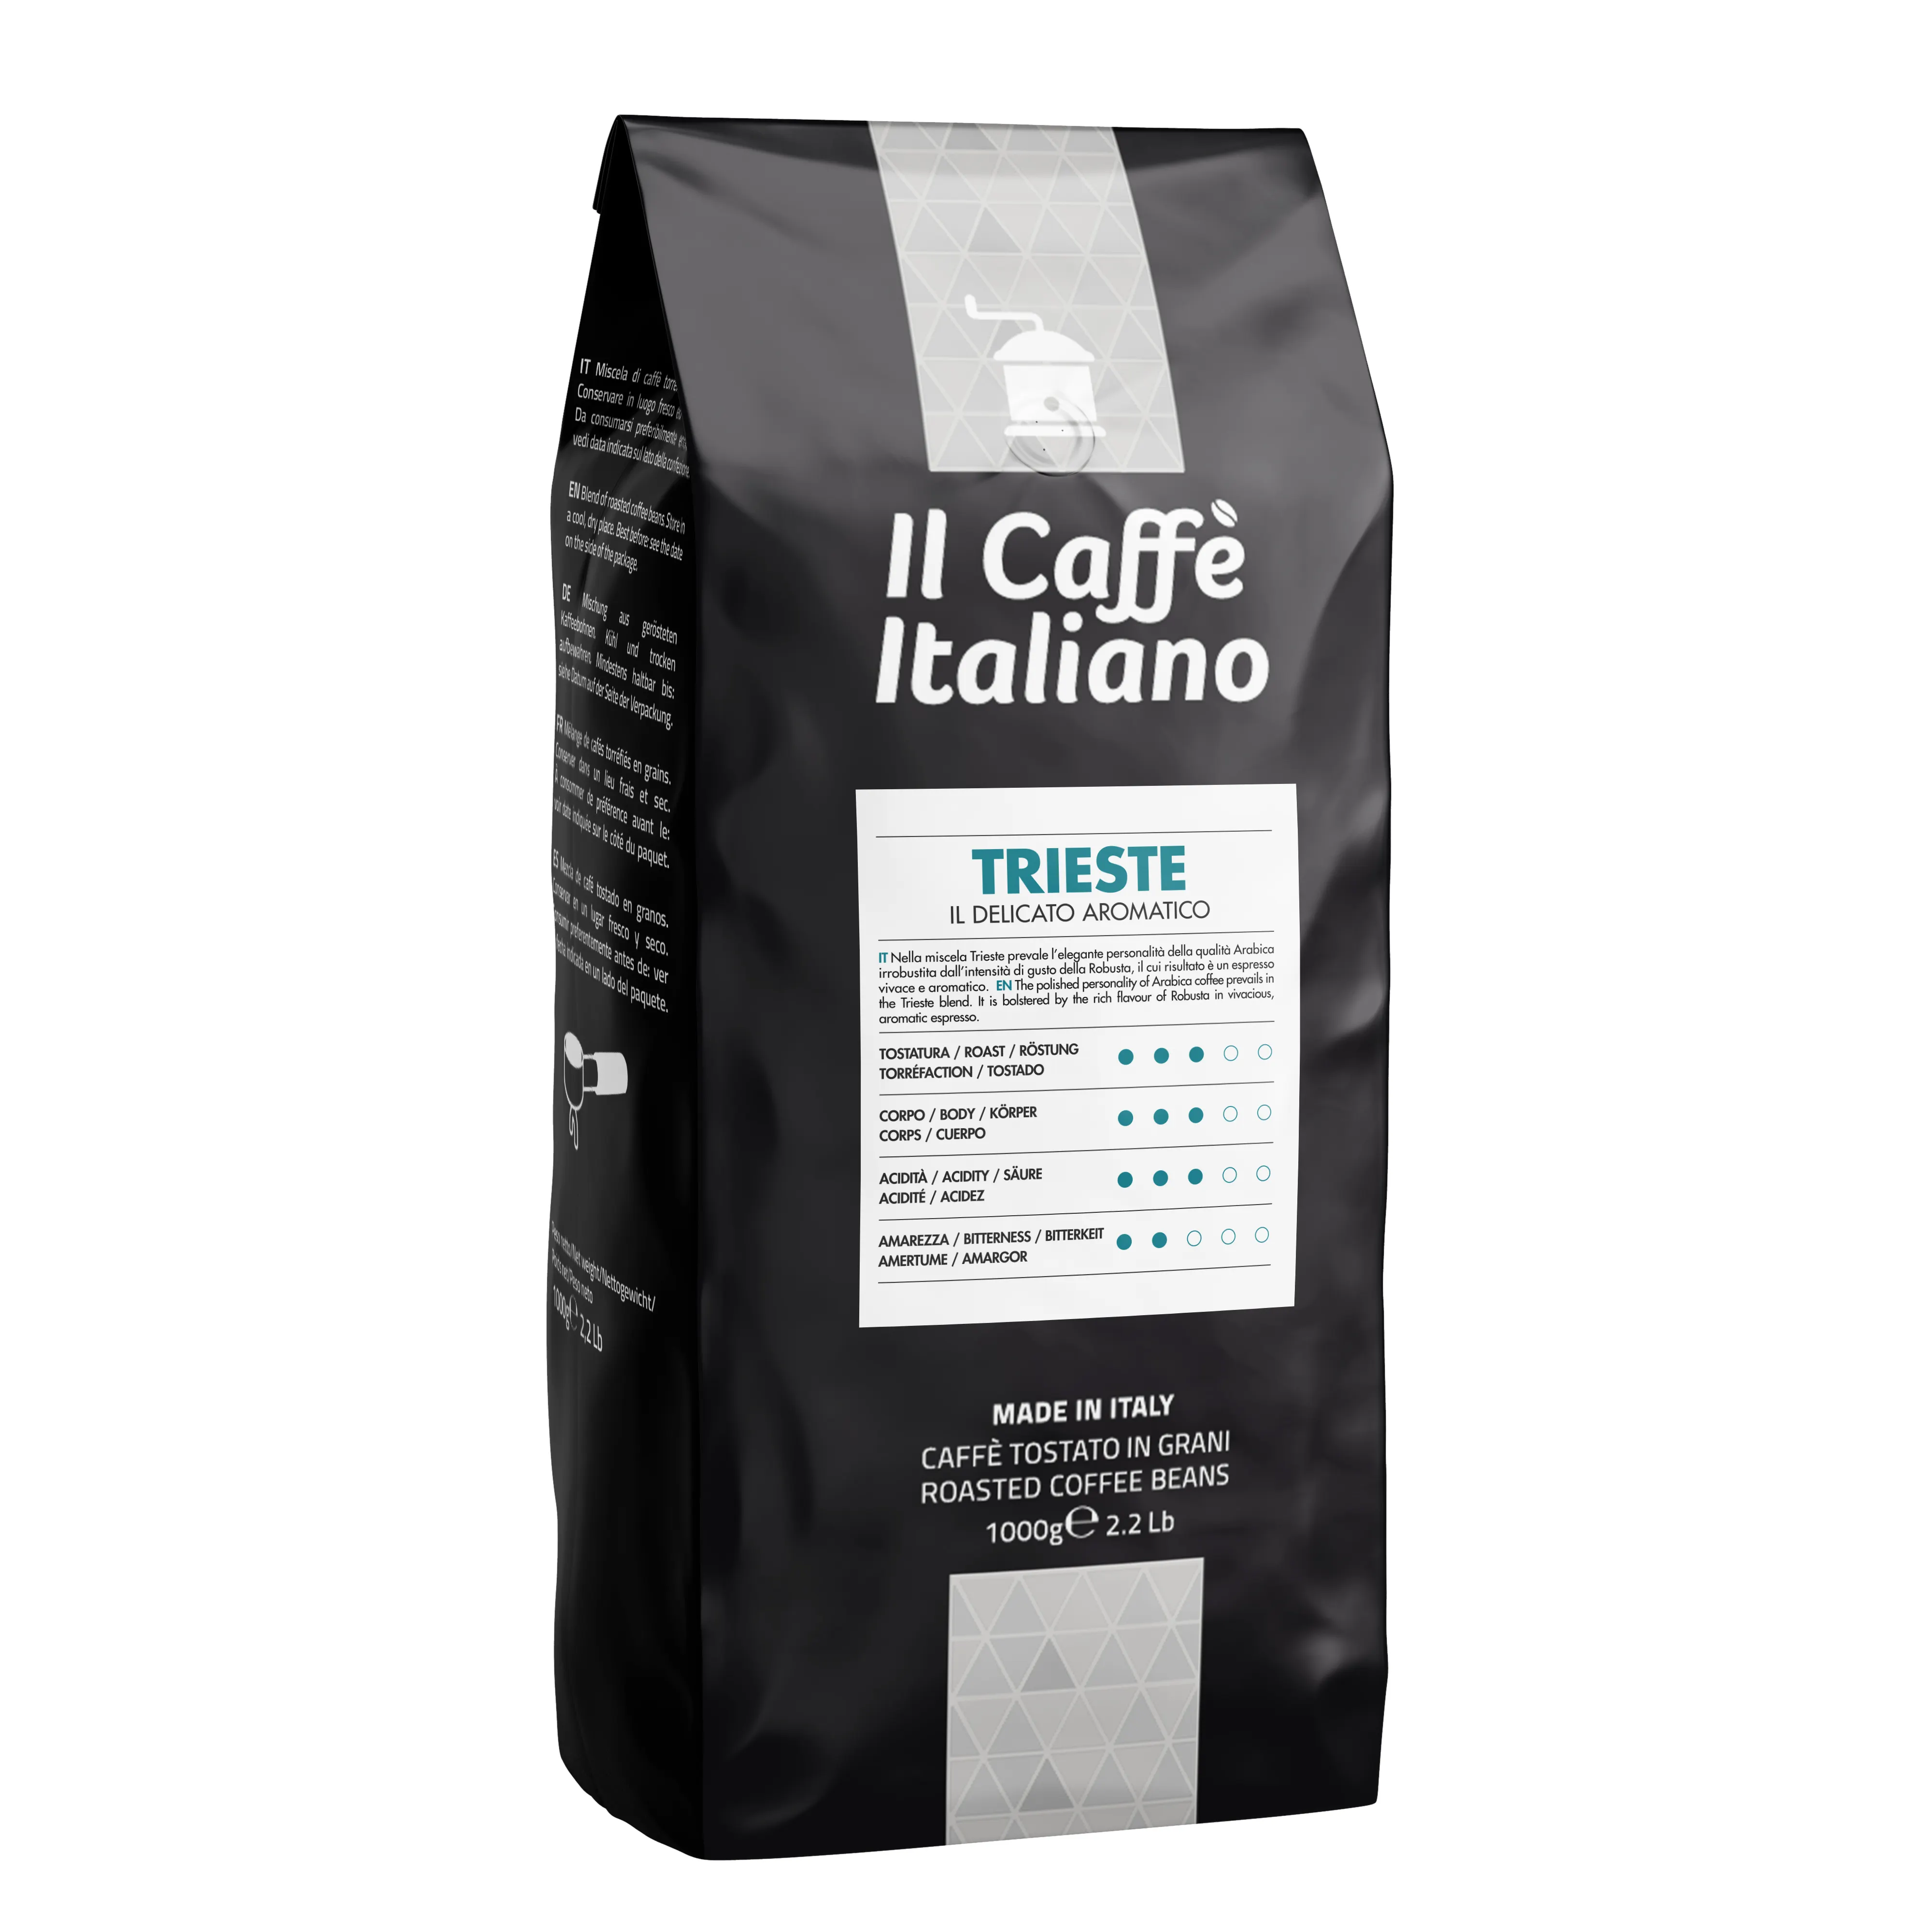 En kaliteli kahve çekirdekleri-Trieste-1 kg